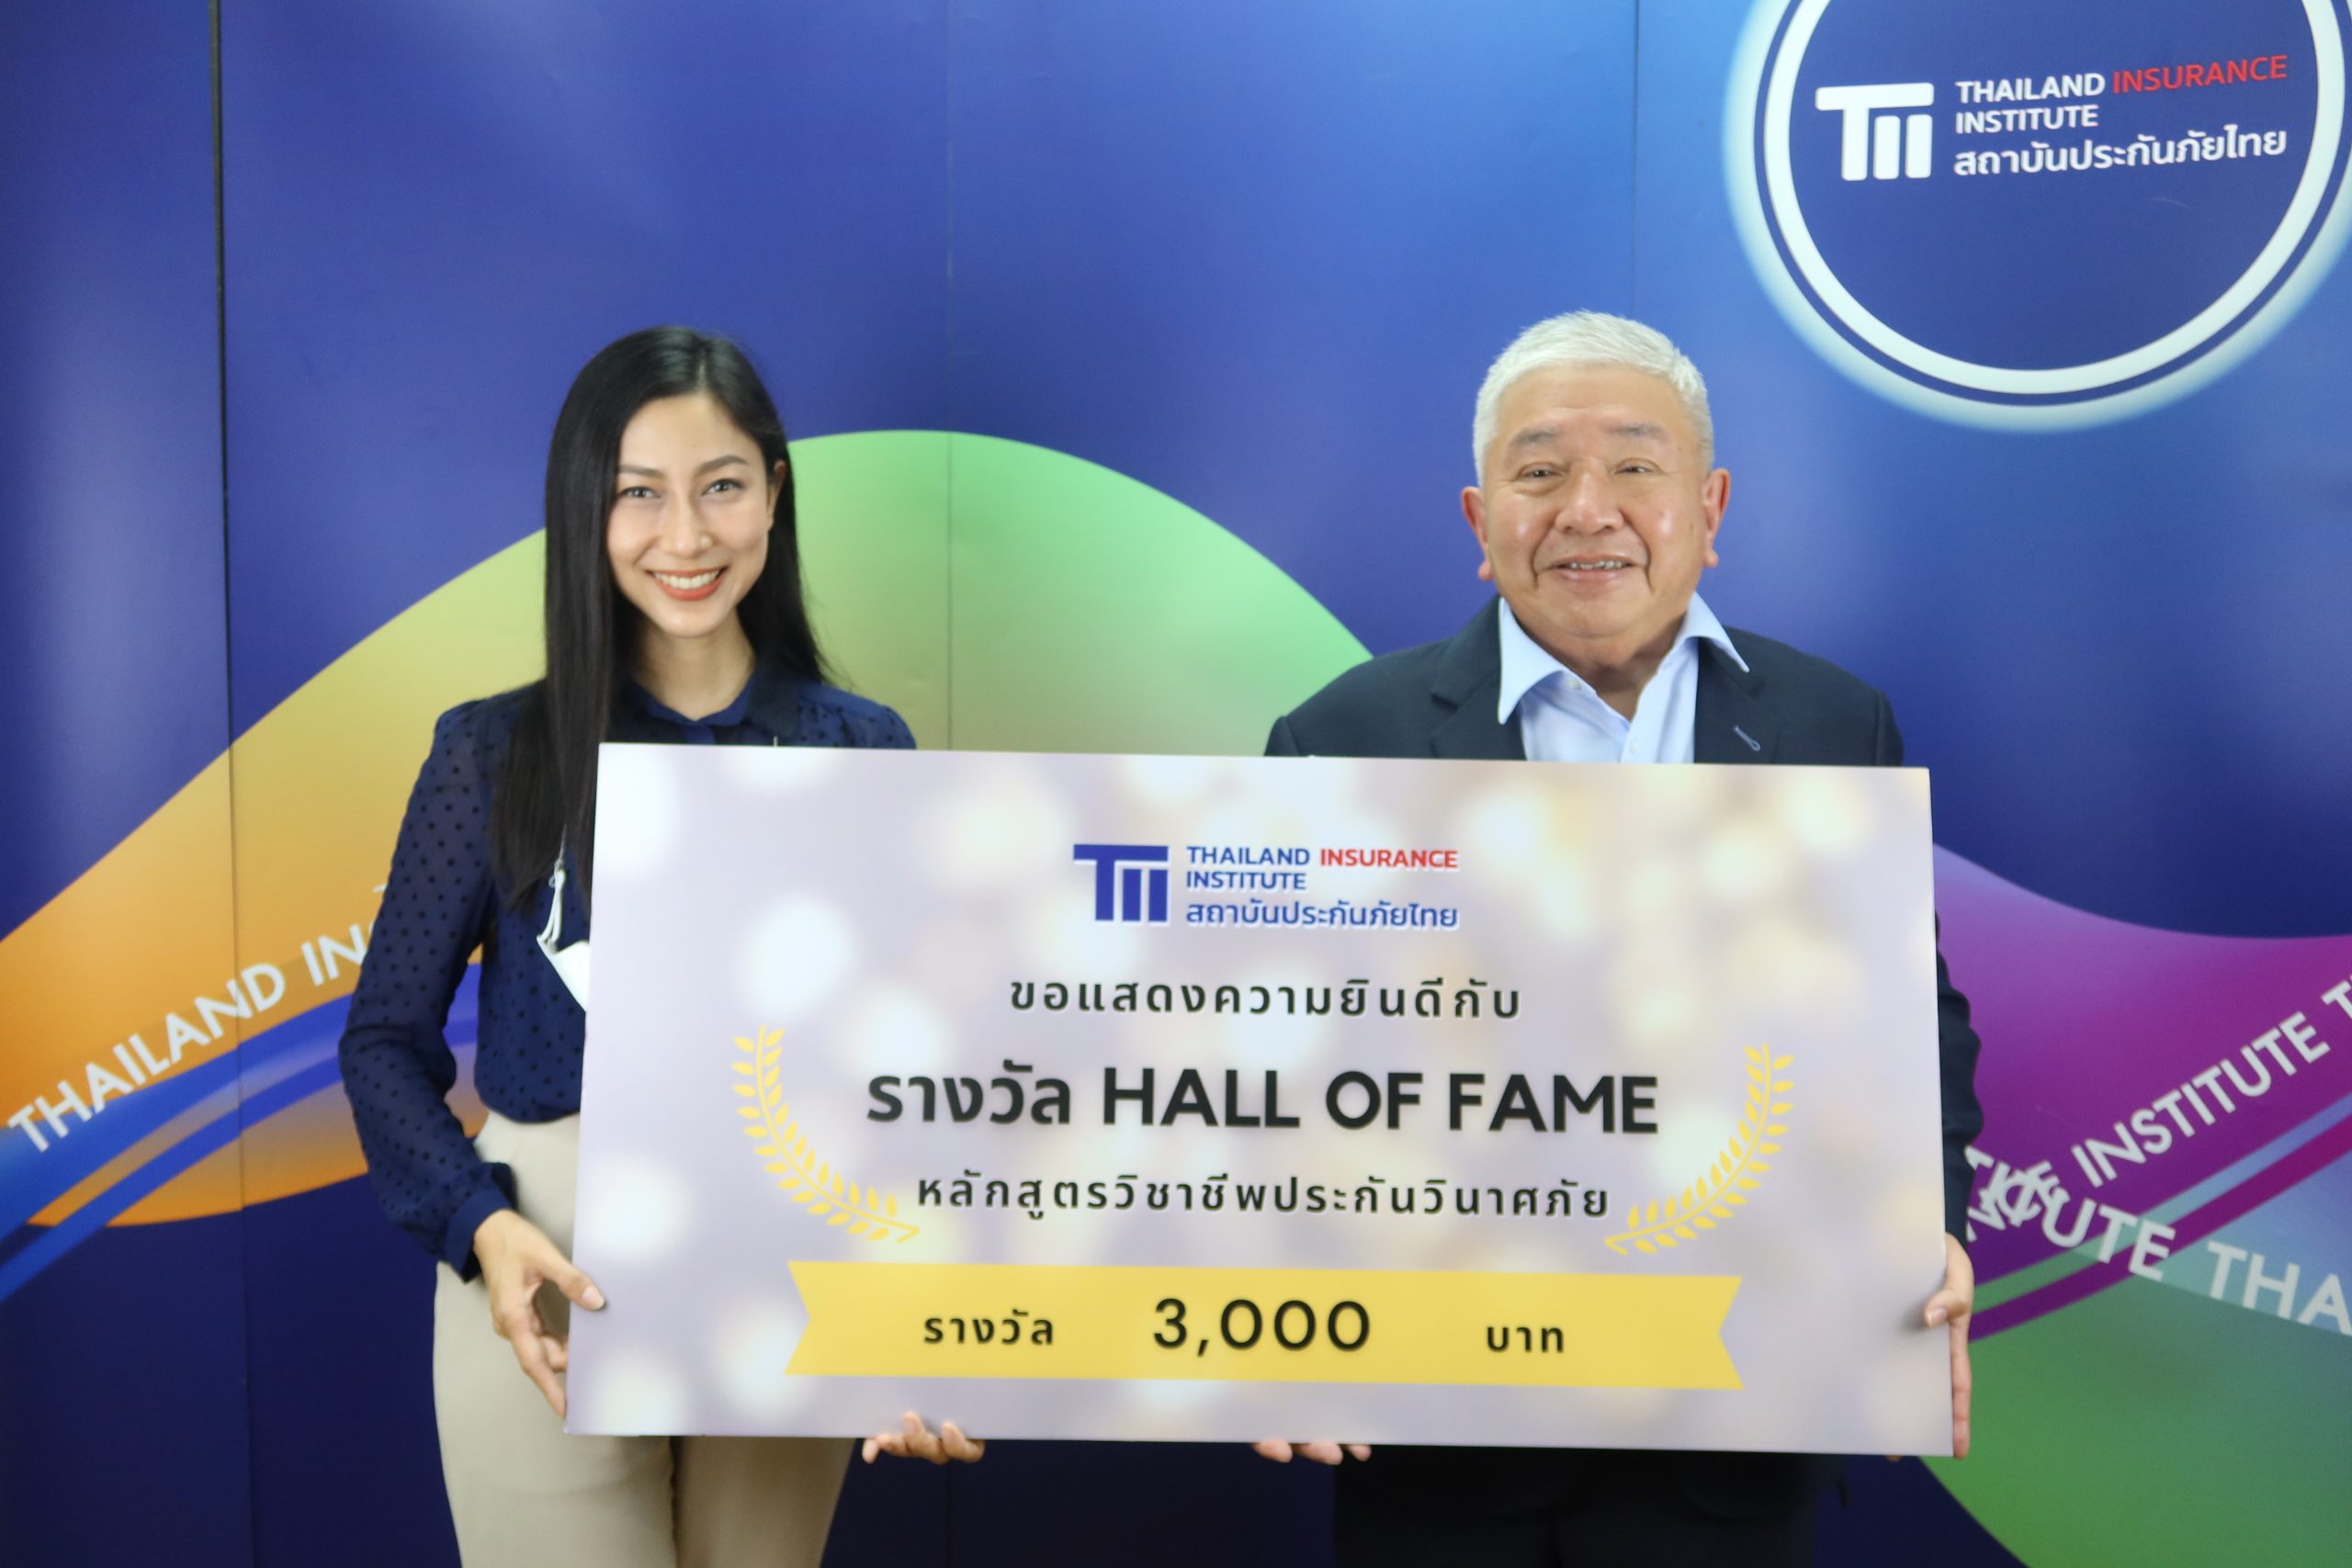 คุณทัตเทพ สุจิตจร ผู้อำนวยการสถาบันประกันภัยไทย มอบรางวัล Hall of Fame ให้แก่ผู้ที่มีผลการเรียนได้เกรด A 5 วิชา หลักสูตรวิชาชีพประกันวินาศภัย ประจำปี 2565 5